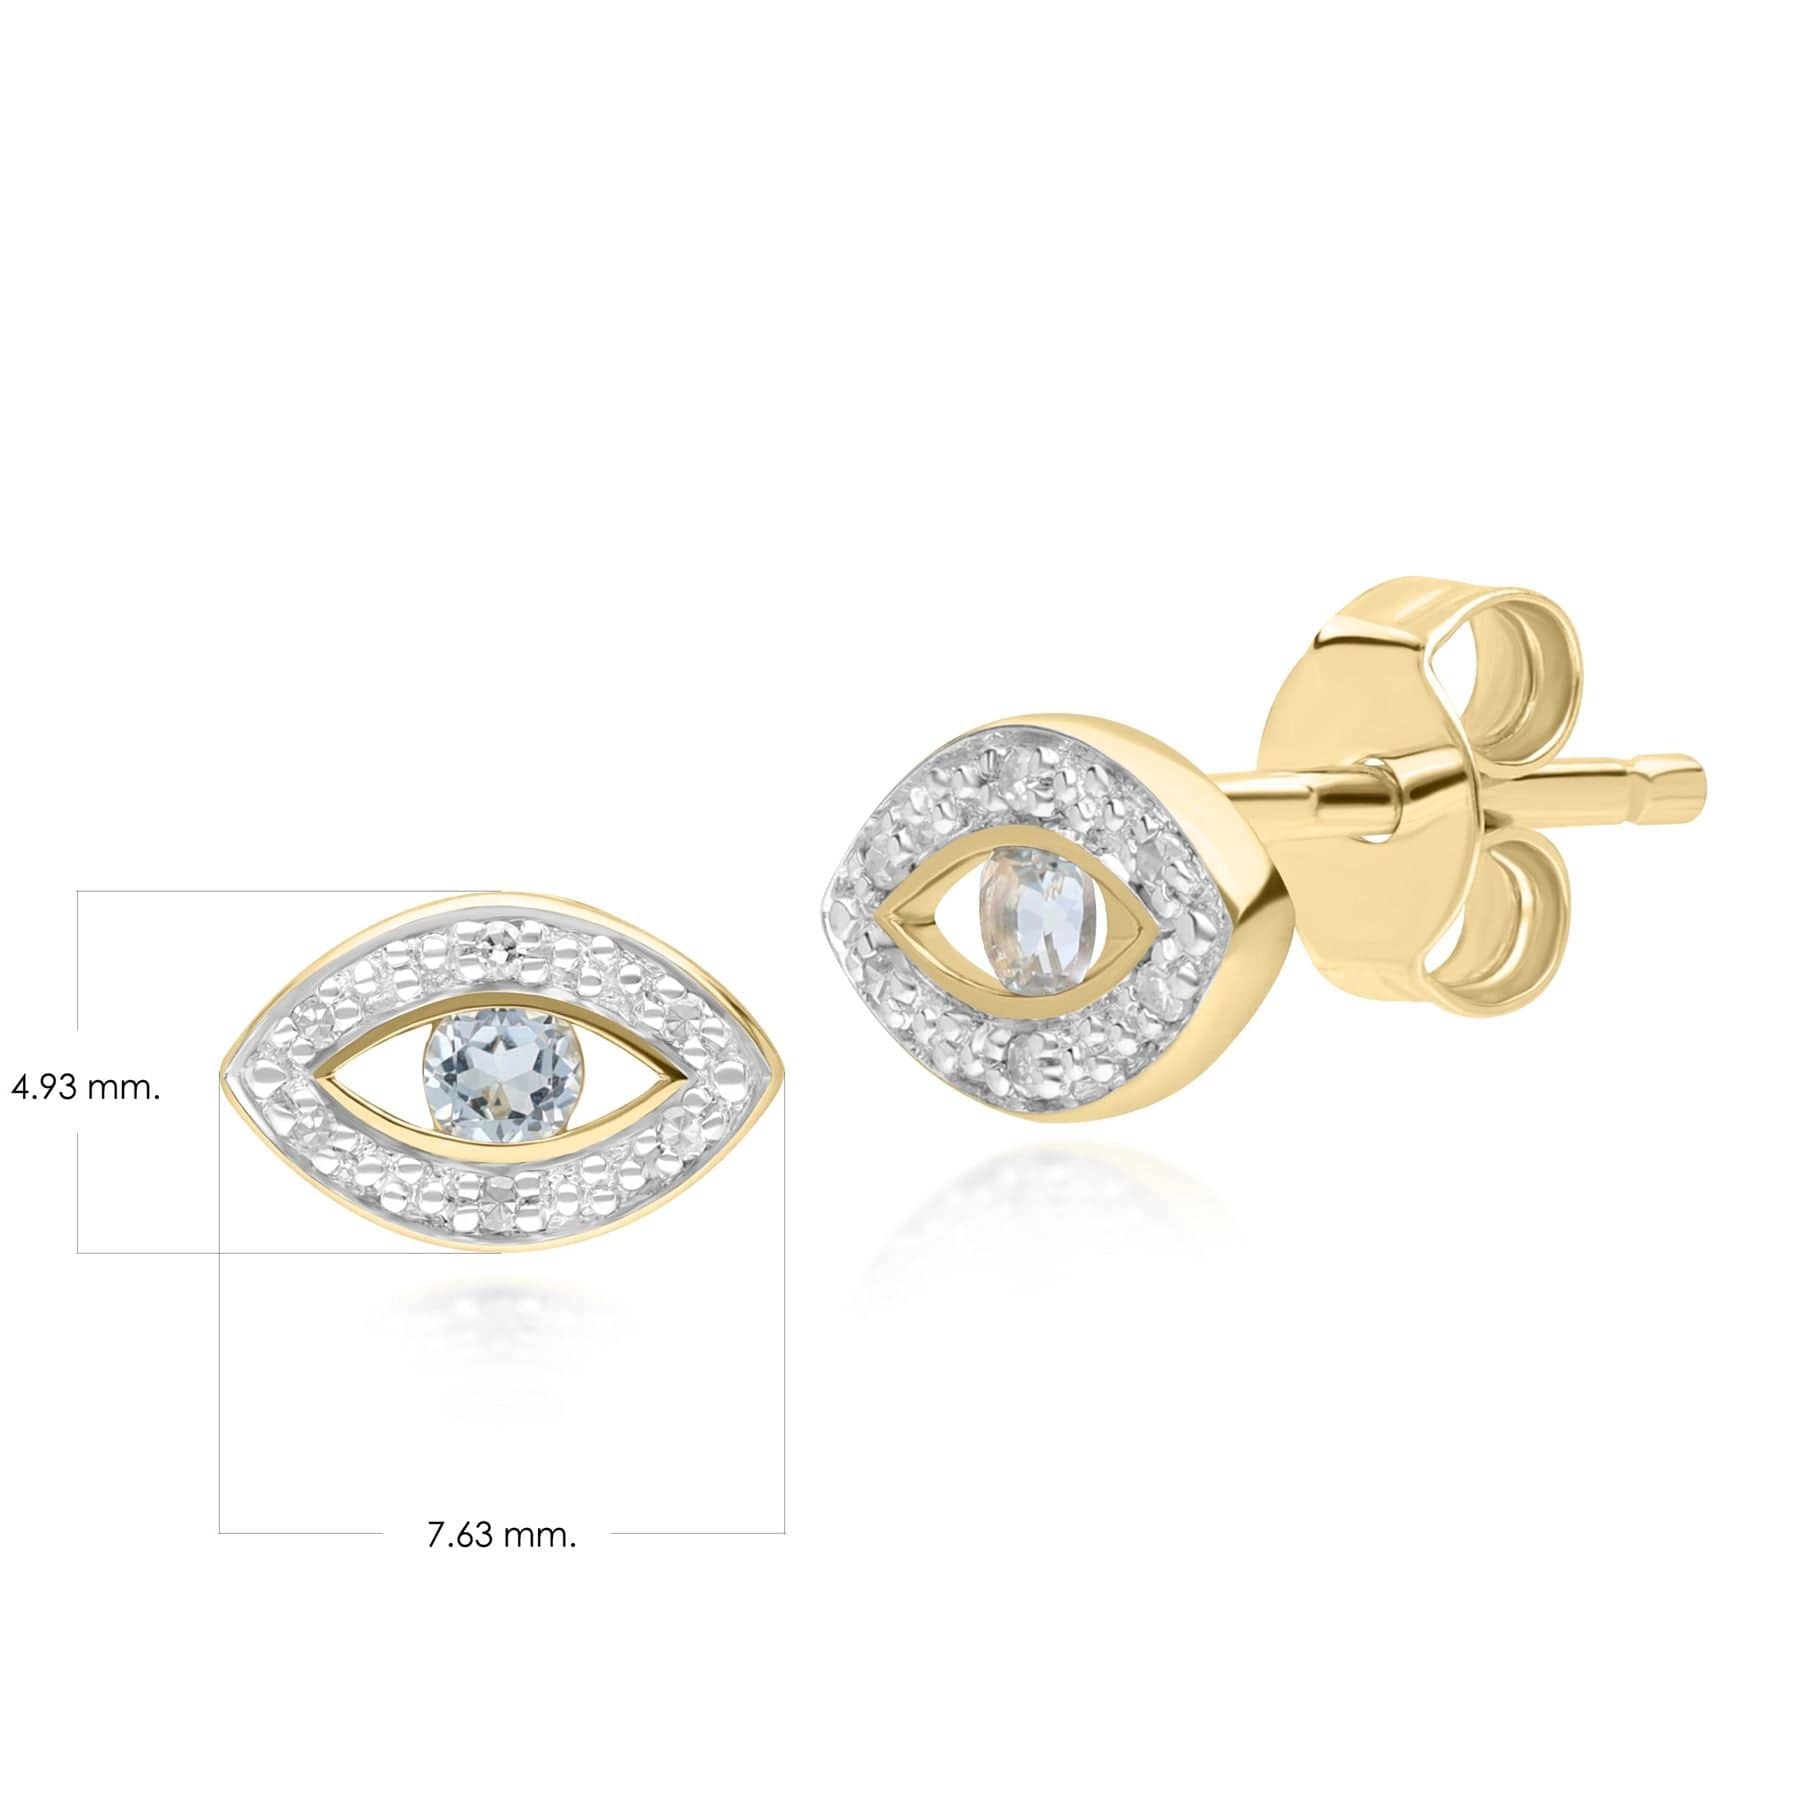 135E1824039 ECFEW™ Dainty Evil Eye Blue Topaz & Diamond Stud Earrings in 9ct Yellow Gold Dimensions